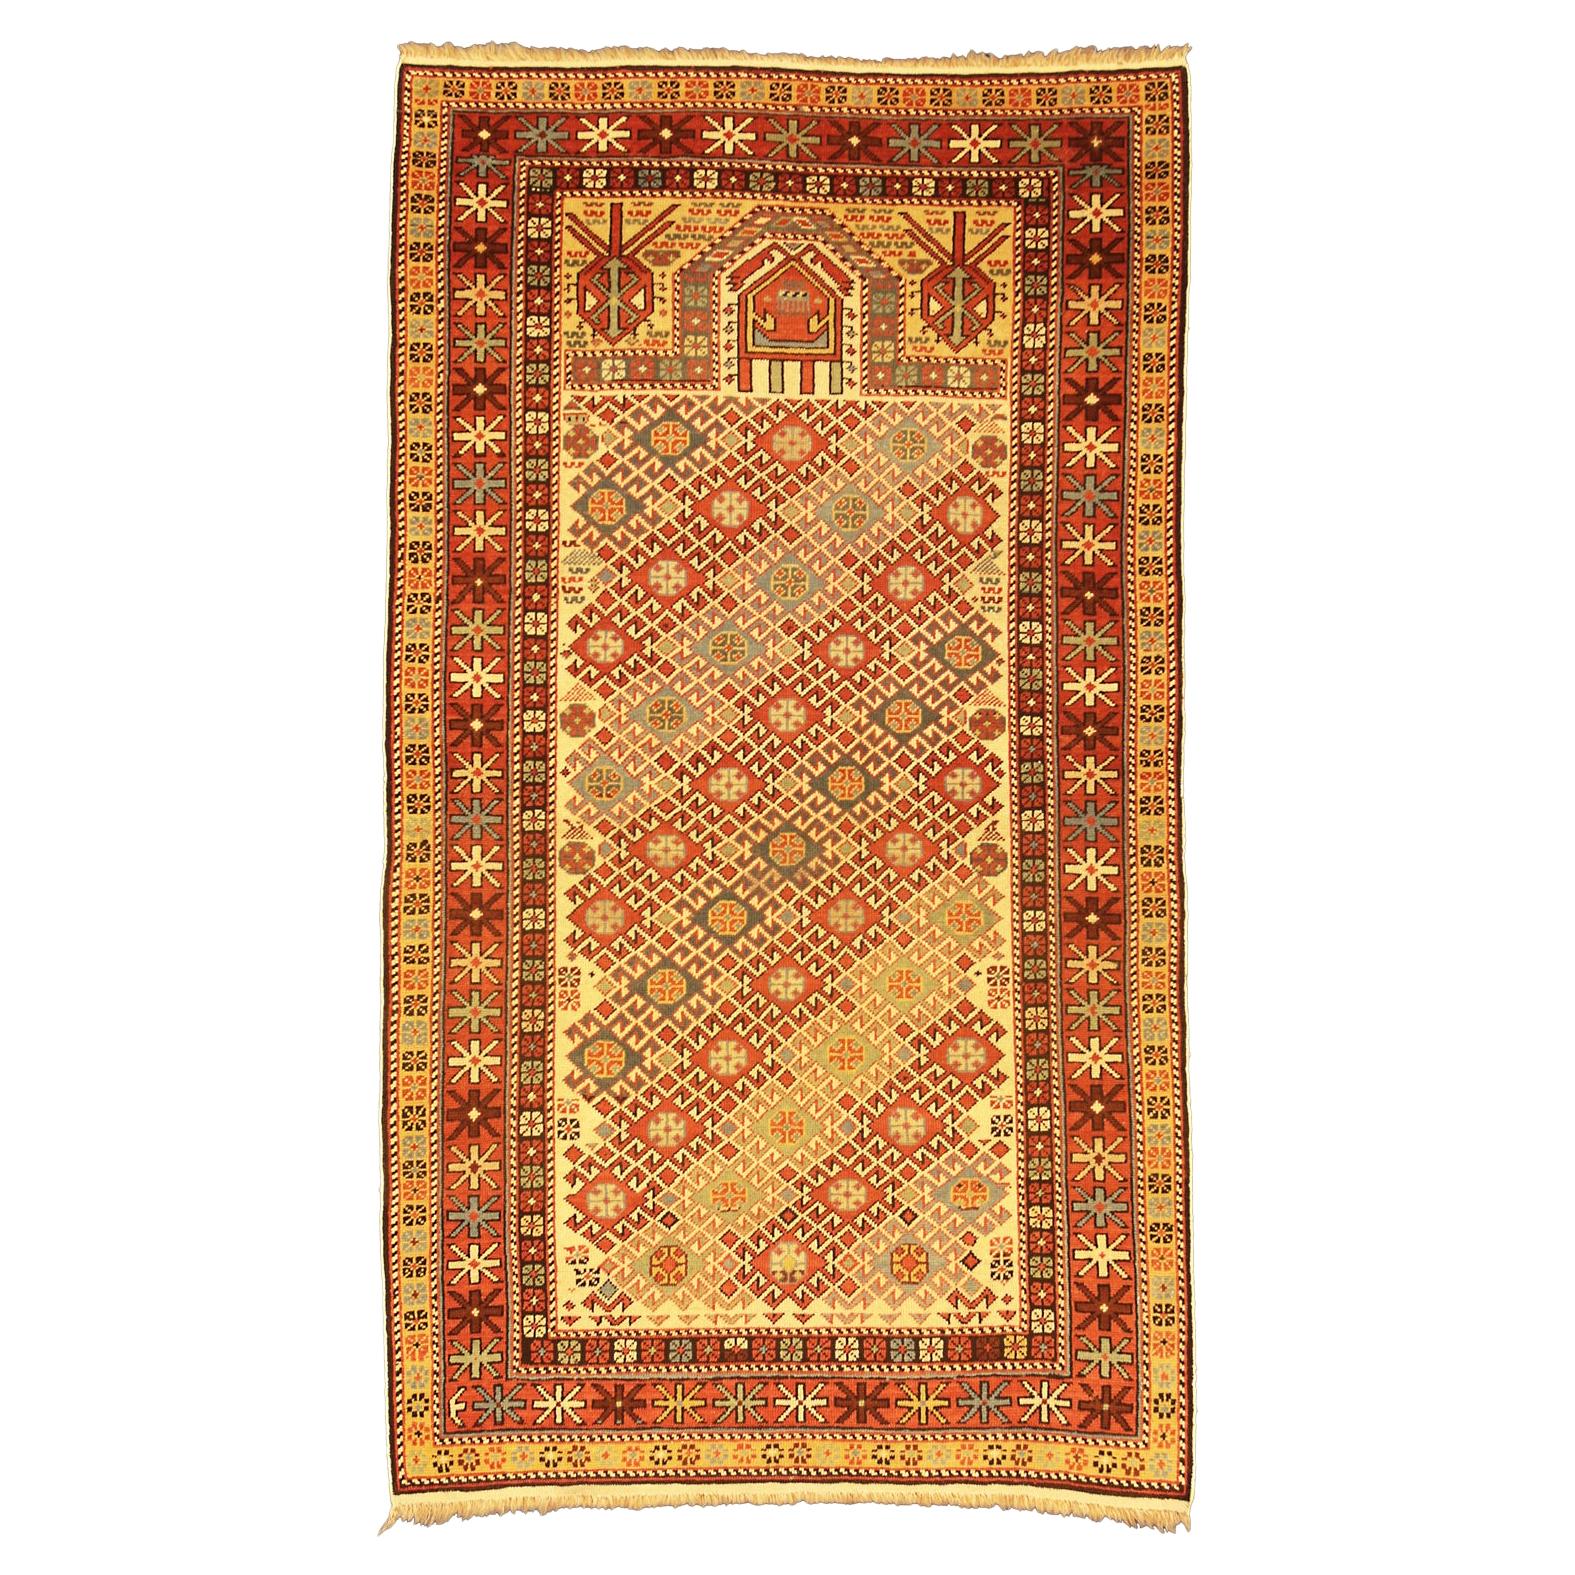 Fine tapis caucasien ancien Daghestan en laine beige et crème, vers 1890